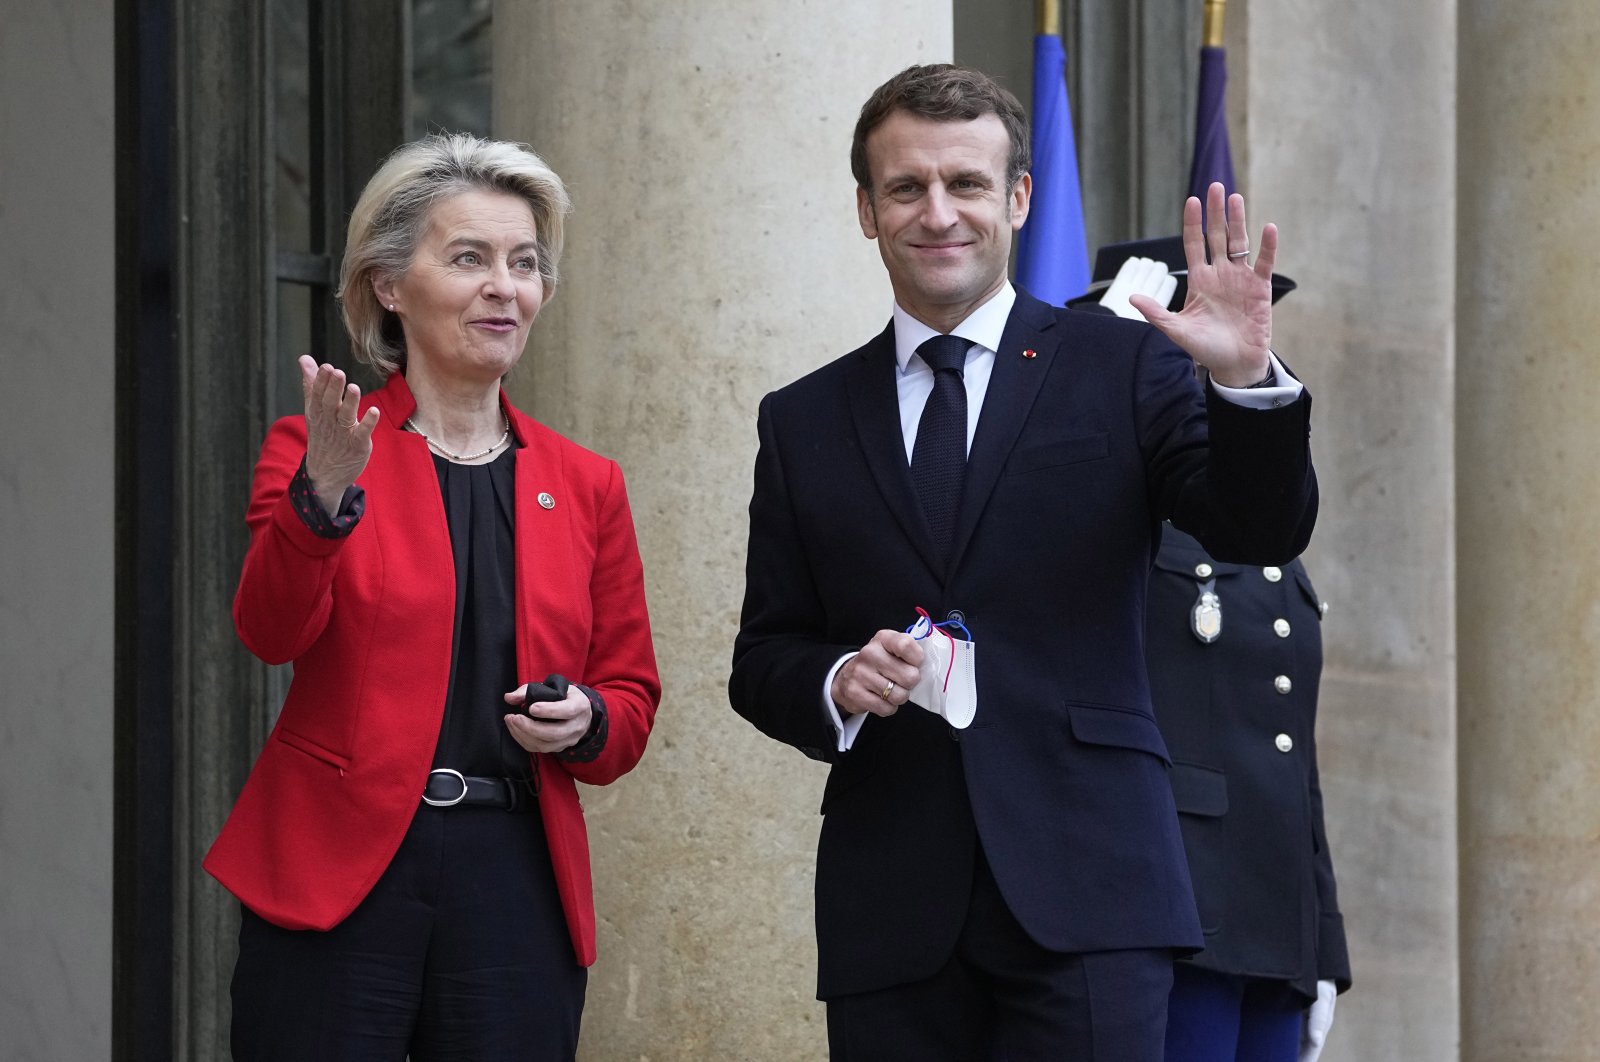 Prancis mengambil alih kepresidenan UE dengan dorongan untuk lebih banyak kedaulatan